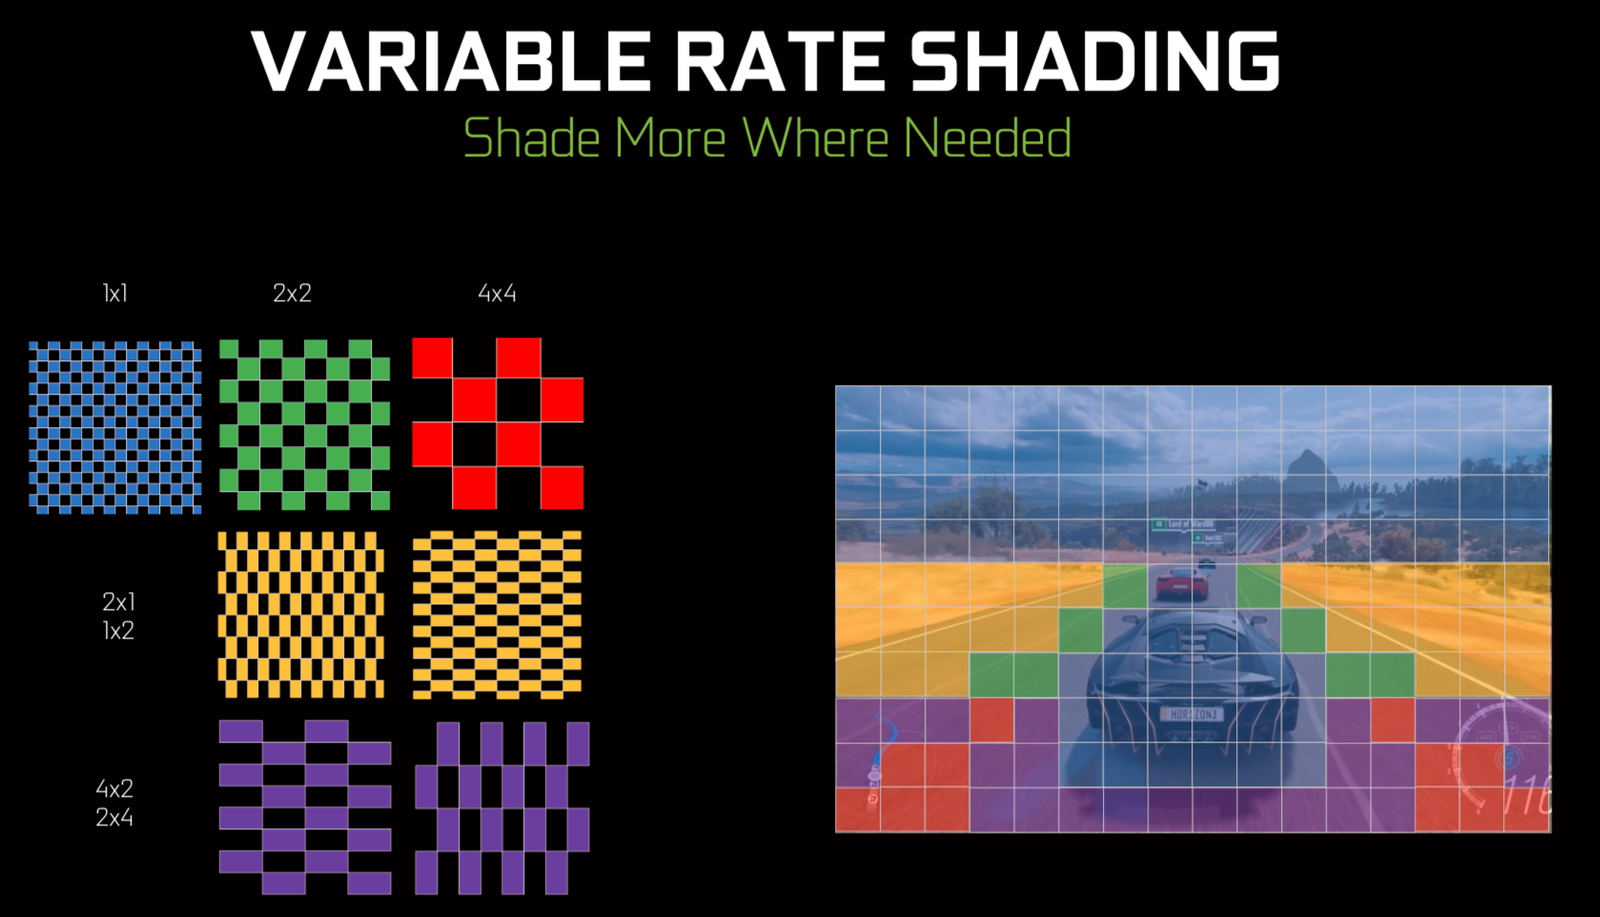 Bildet er lånt fra en tidligere sak om Nvidias bruk av Variable Rate Shading på PC. Her illustrerer de hvordan utviklere kan styre shadingen på bilen for hvert bilde, mens veien og grøfta i sidesynet bare shades på nytt for hver fjerde bilde ettersom de ikke skifter farge like ofte og er i bevegelse slik at du uansett ikke ser de små feilene.